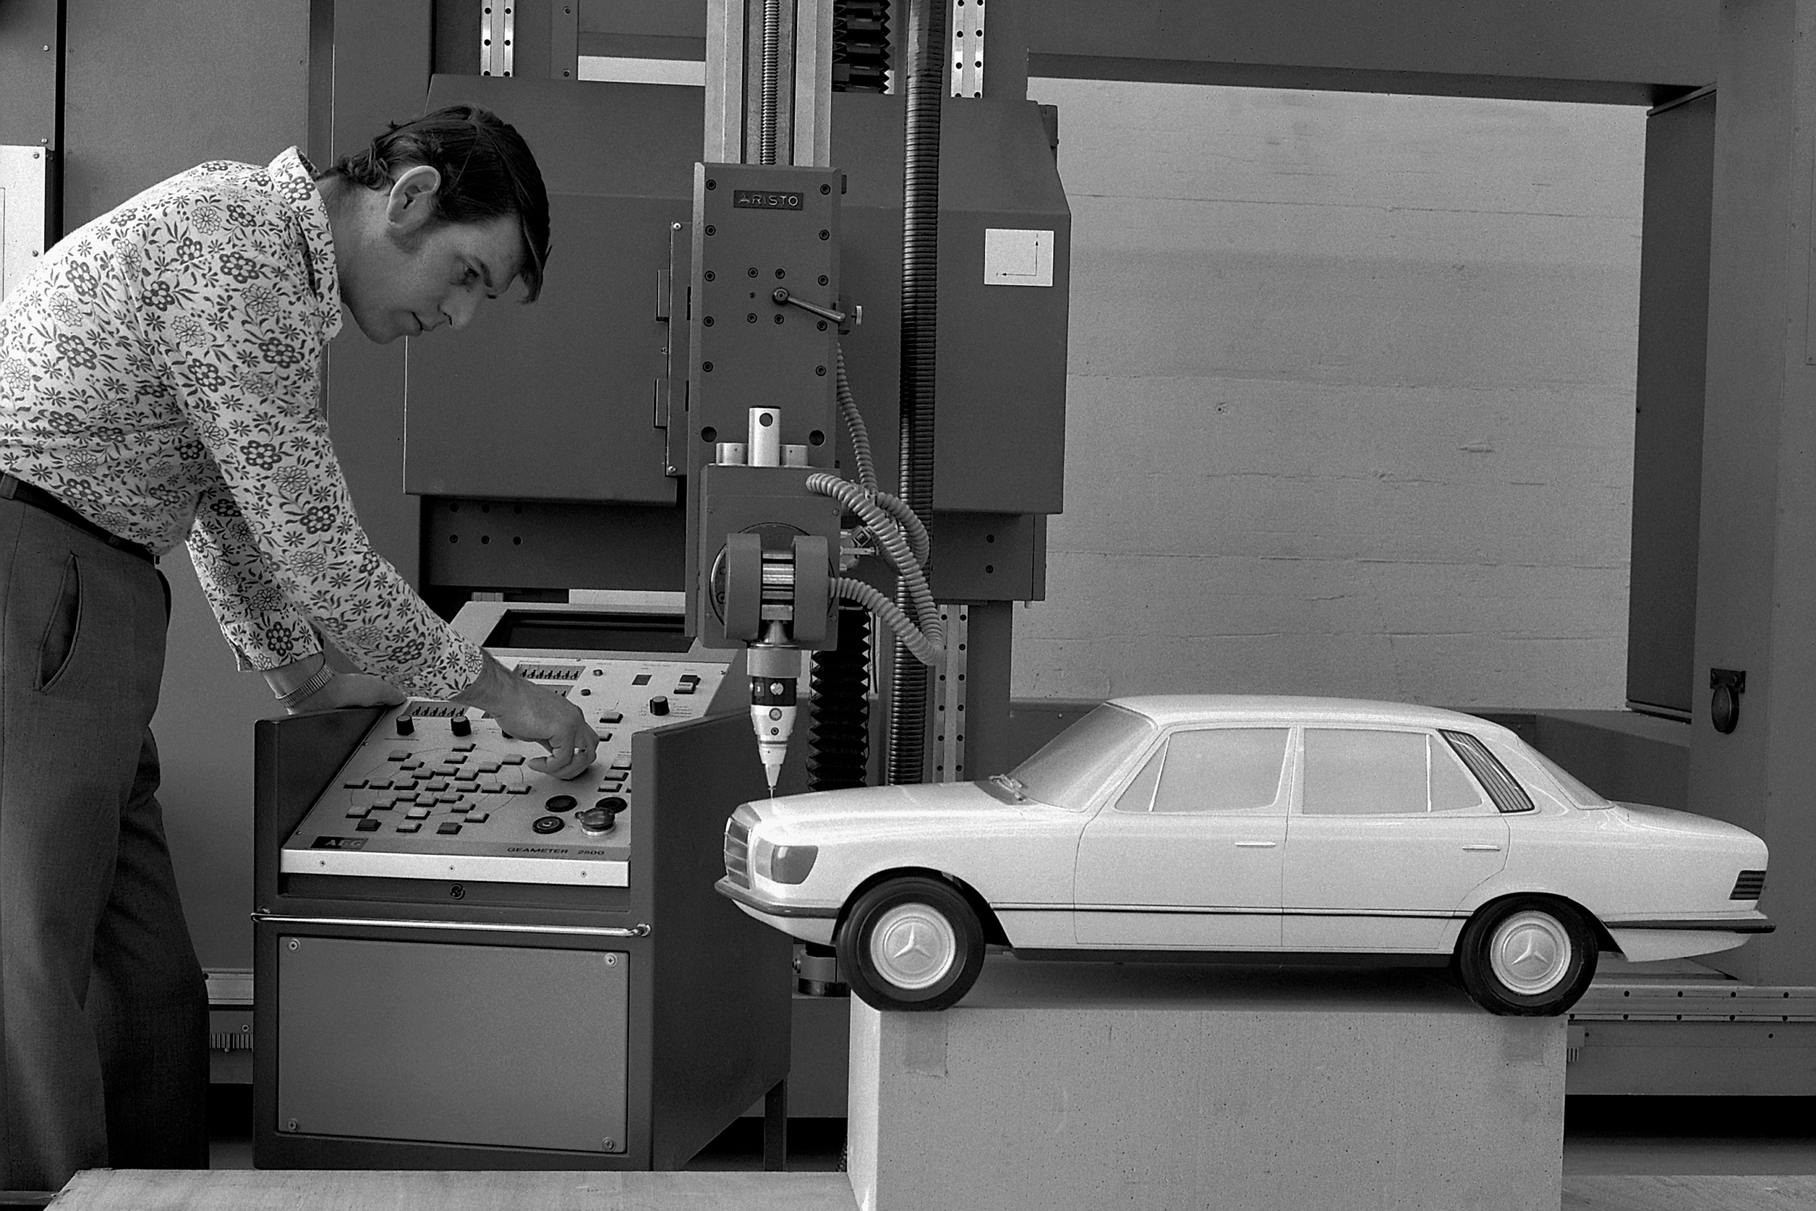 Очень интересный снимок, сделанный в техническом центре Daimler-Benz в Зиндельфингене: макет в масштабе 1:5 обмеряют в специальной машине, чтобы создать цифровую модель поверхности. Всё происходит в 1968 или в начале 1969 года.